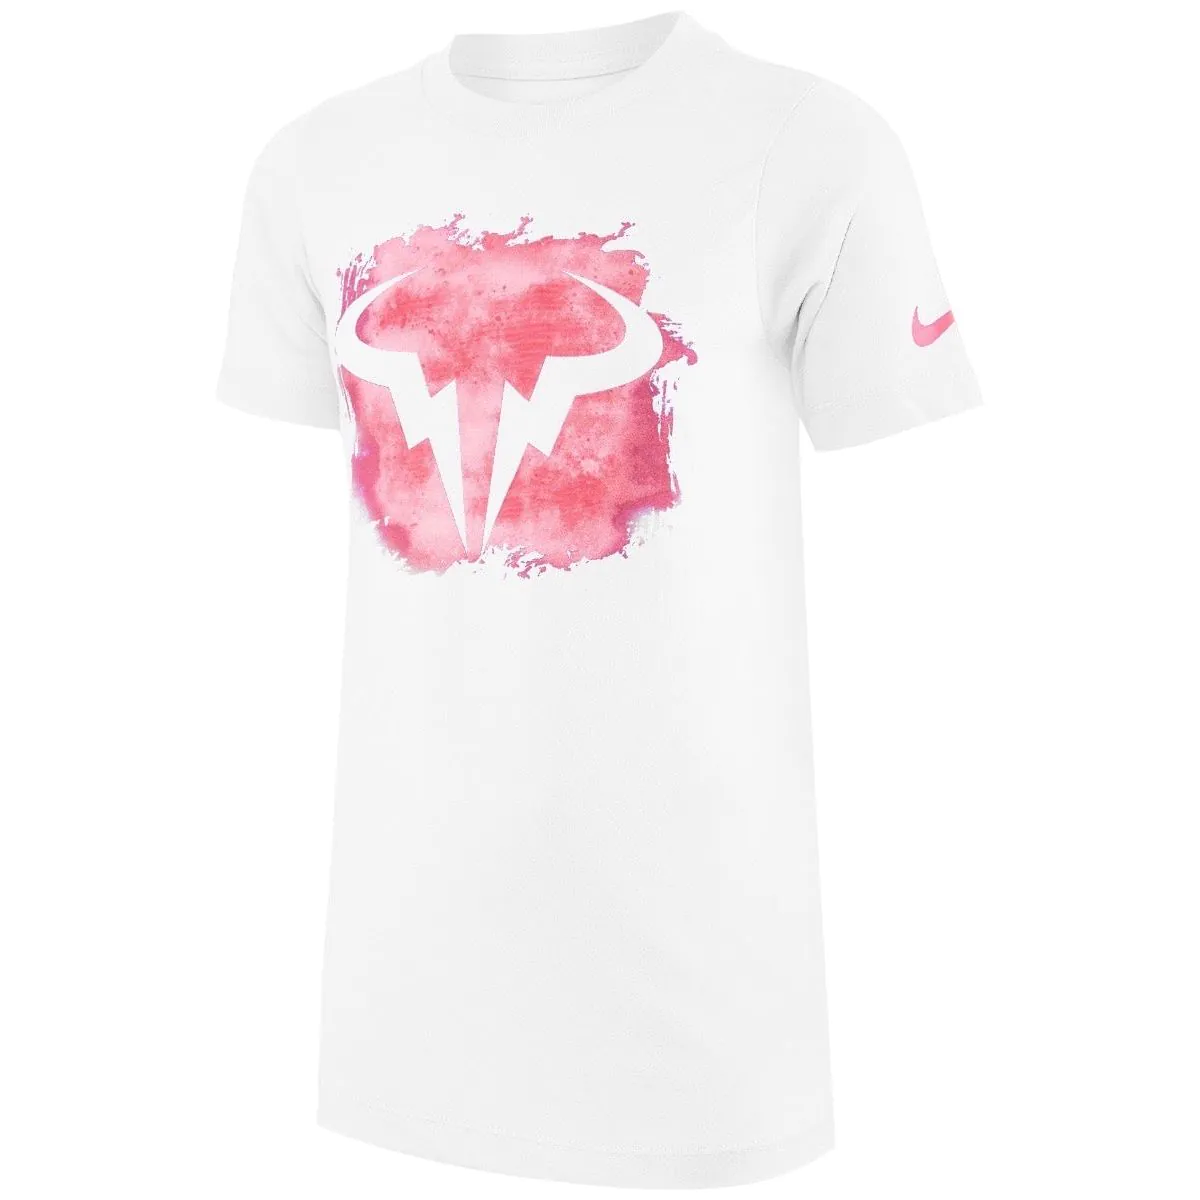 NikeCourt Dri-FIT Rafa Boy's Tennis T-Shirt CU0337-100